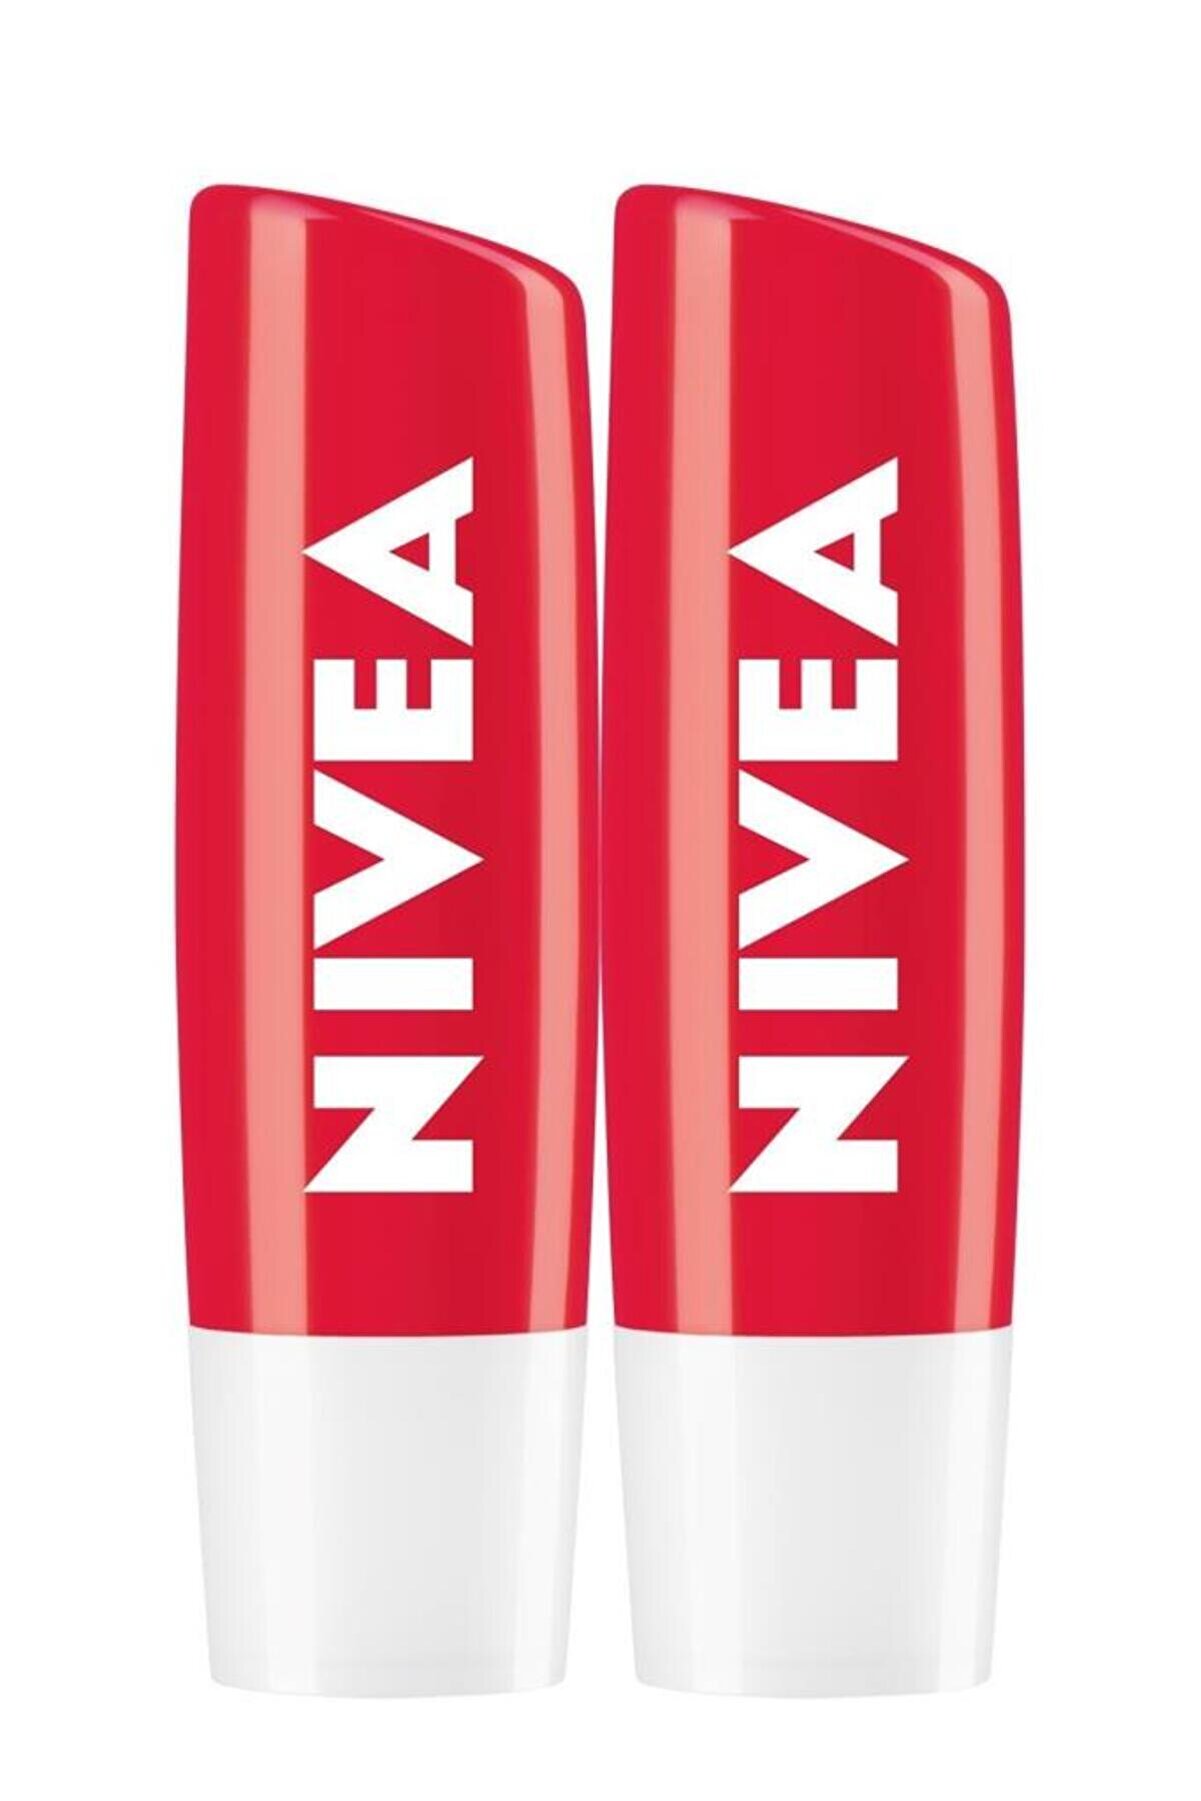 NIVEA Çilek Dudak Bakım Kremi,24 Saat Nem,dudak Bakımı,hafif Kırmızı Işıltı,4,8grx2adet